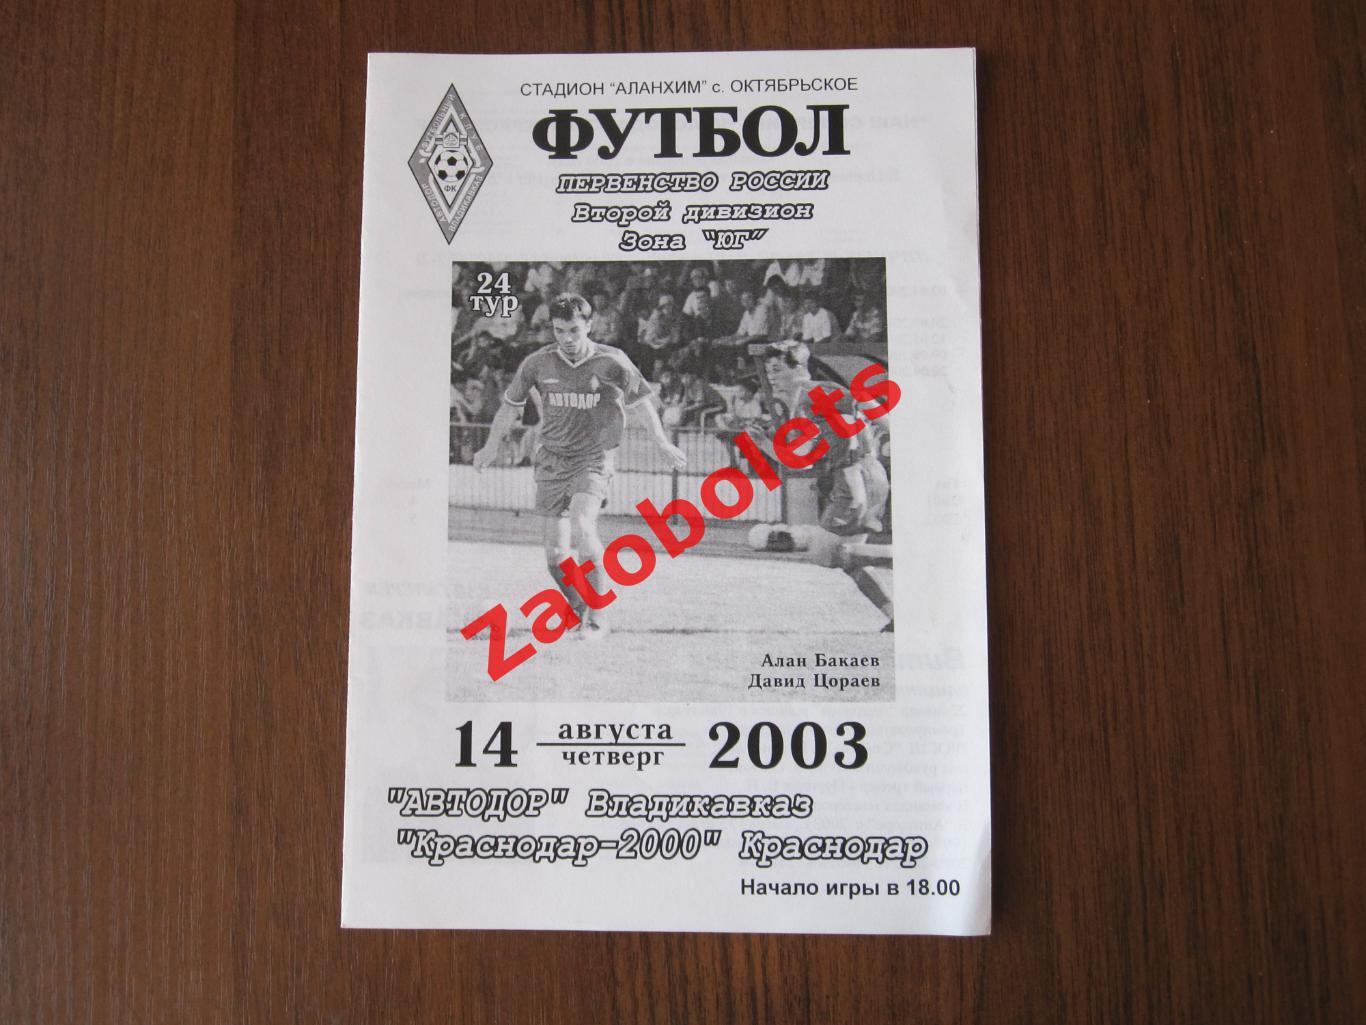 Автодор Владикавказ - ФК Краснодар-2000 2003